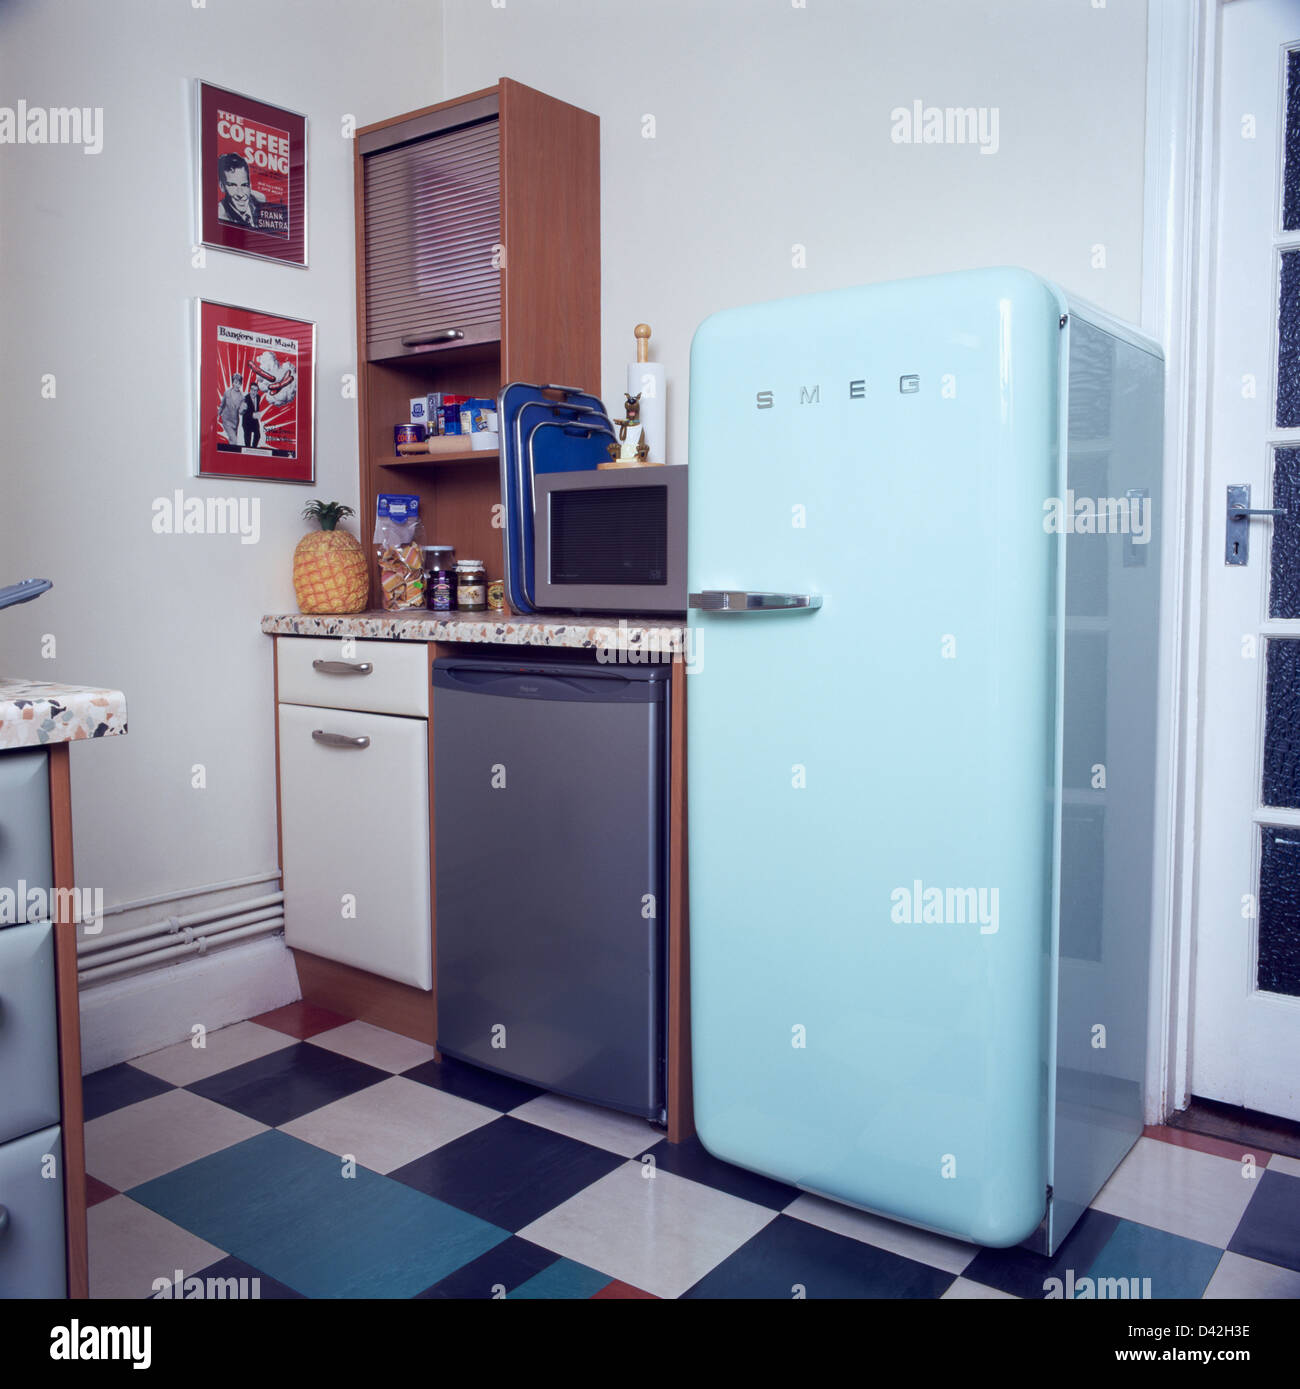 Smeg blue fridge Banque de photographies et d'images à haute résolution -  Alamy